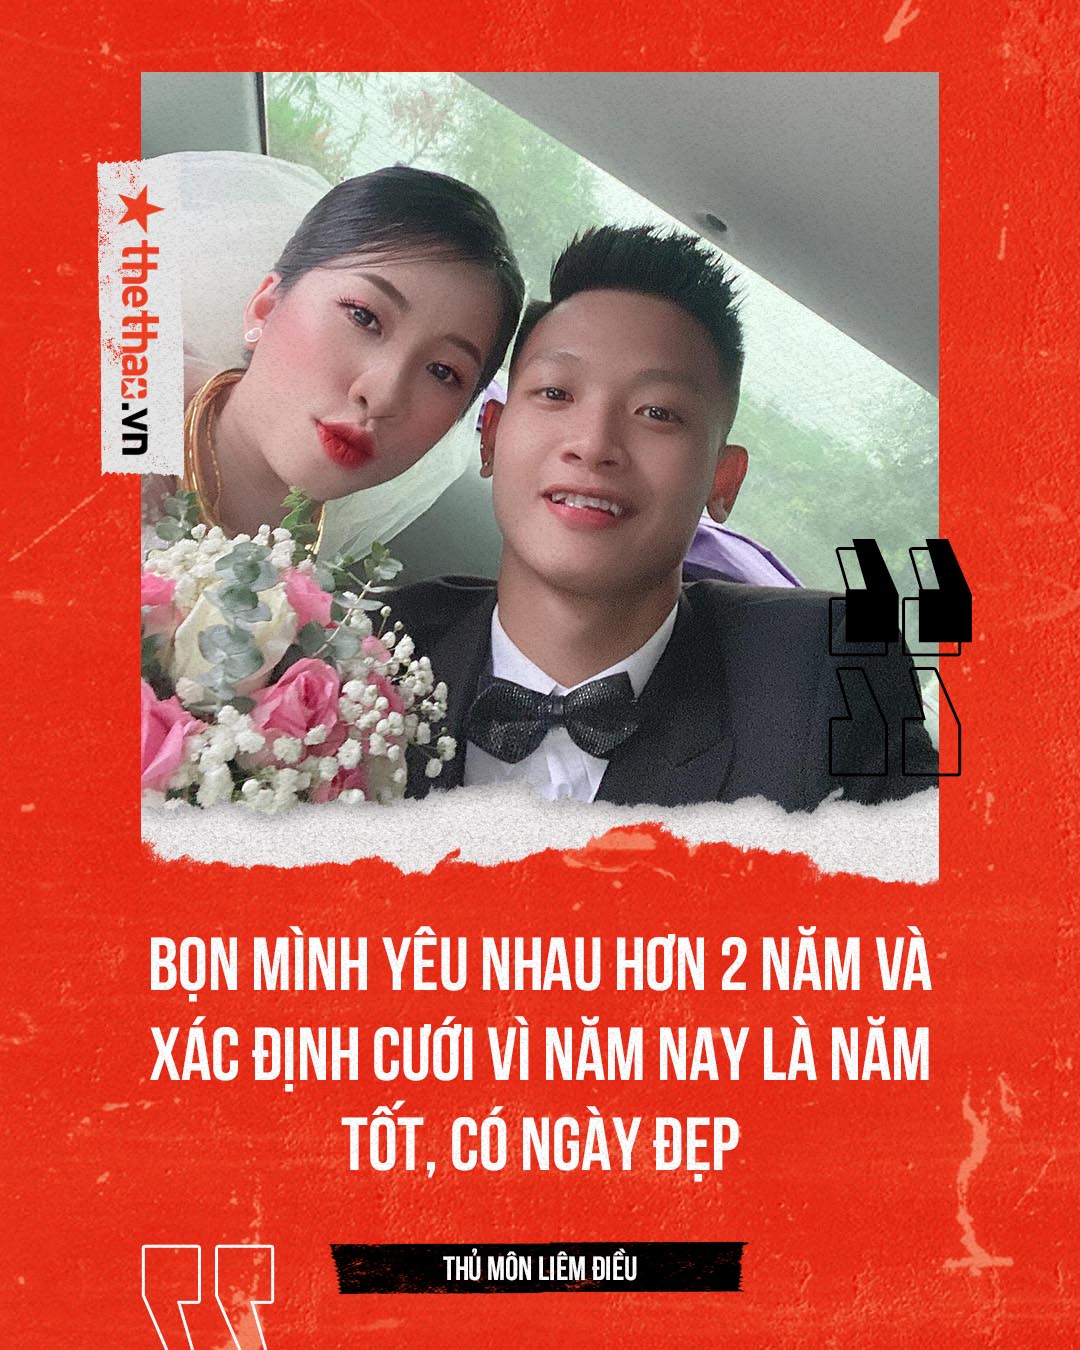 Thủ môn Liêm Điều: Mơ ghi bàn cho U23 Việt Nam, lấy vợ sớm vì đúng ngày tốt - Ảnh 3